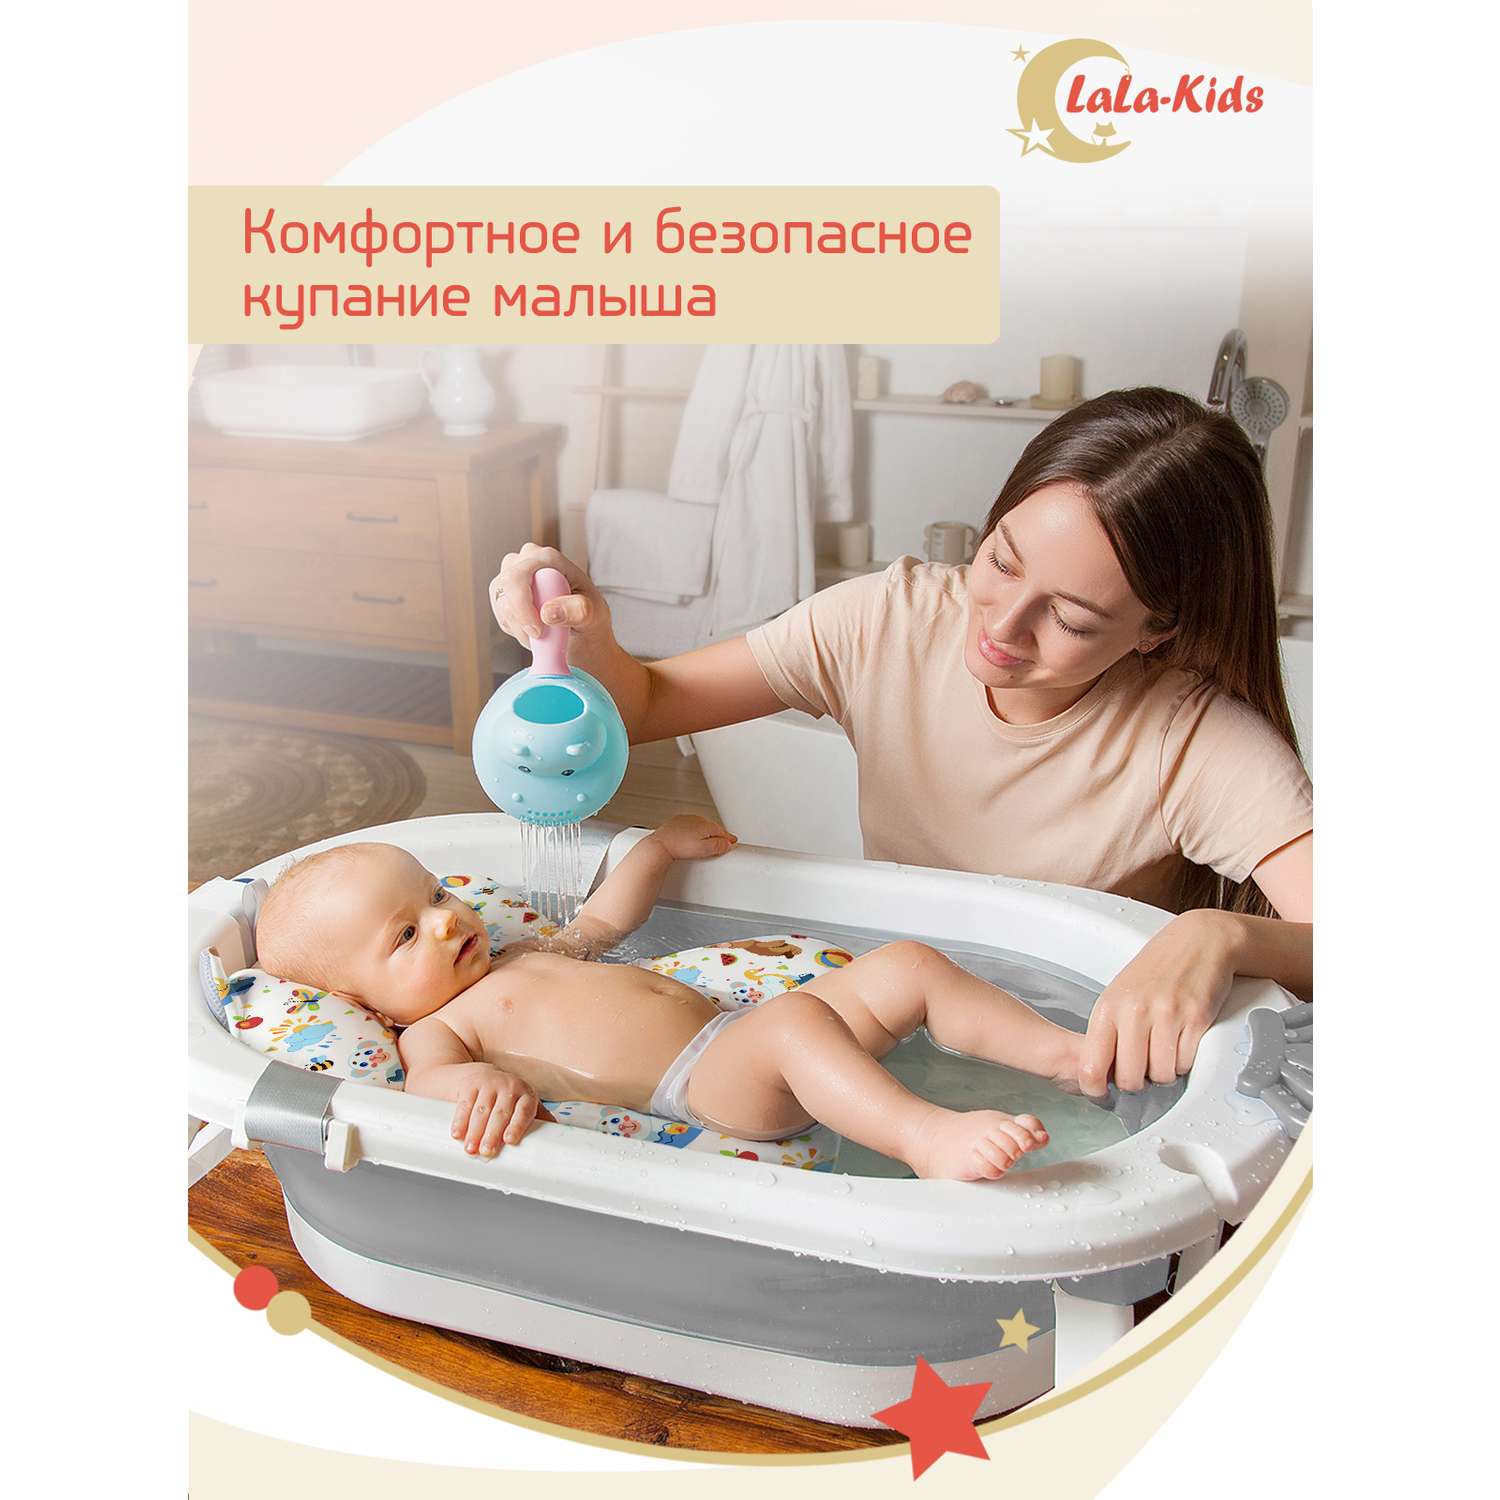 Детская ванночка с термометром LaLa-Kids складная для купания новорожденных с термометром и матрасиком в комплекте - фото 10